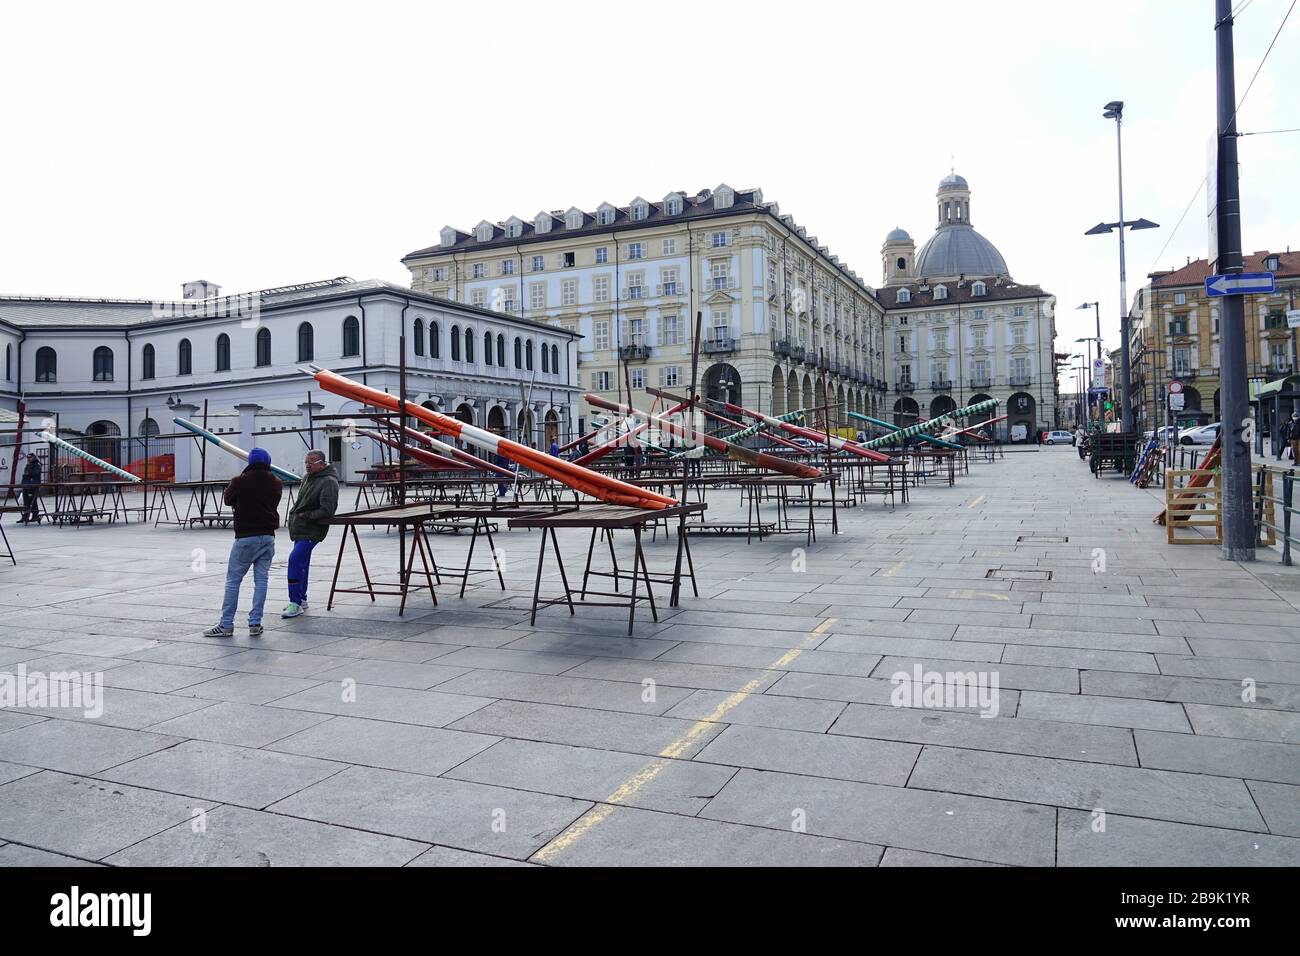 Il Coronavirus blocca i mercati di Torino, una misura adottata per proteggere la salute pubblica. Torino, Italia - Marzo 2020 Foto Stock